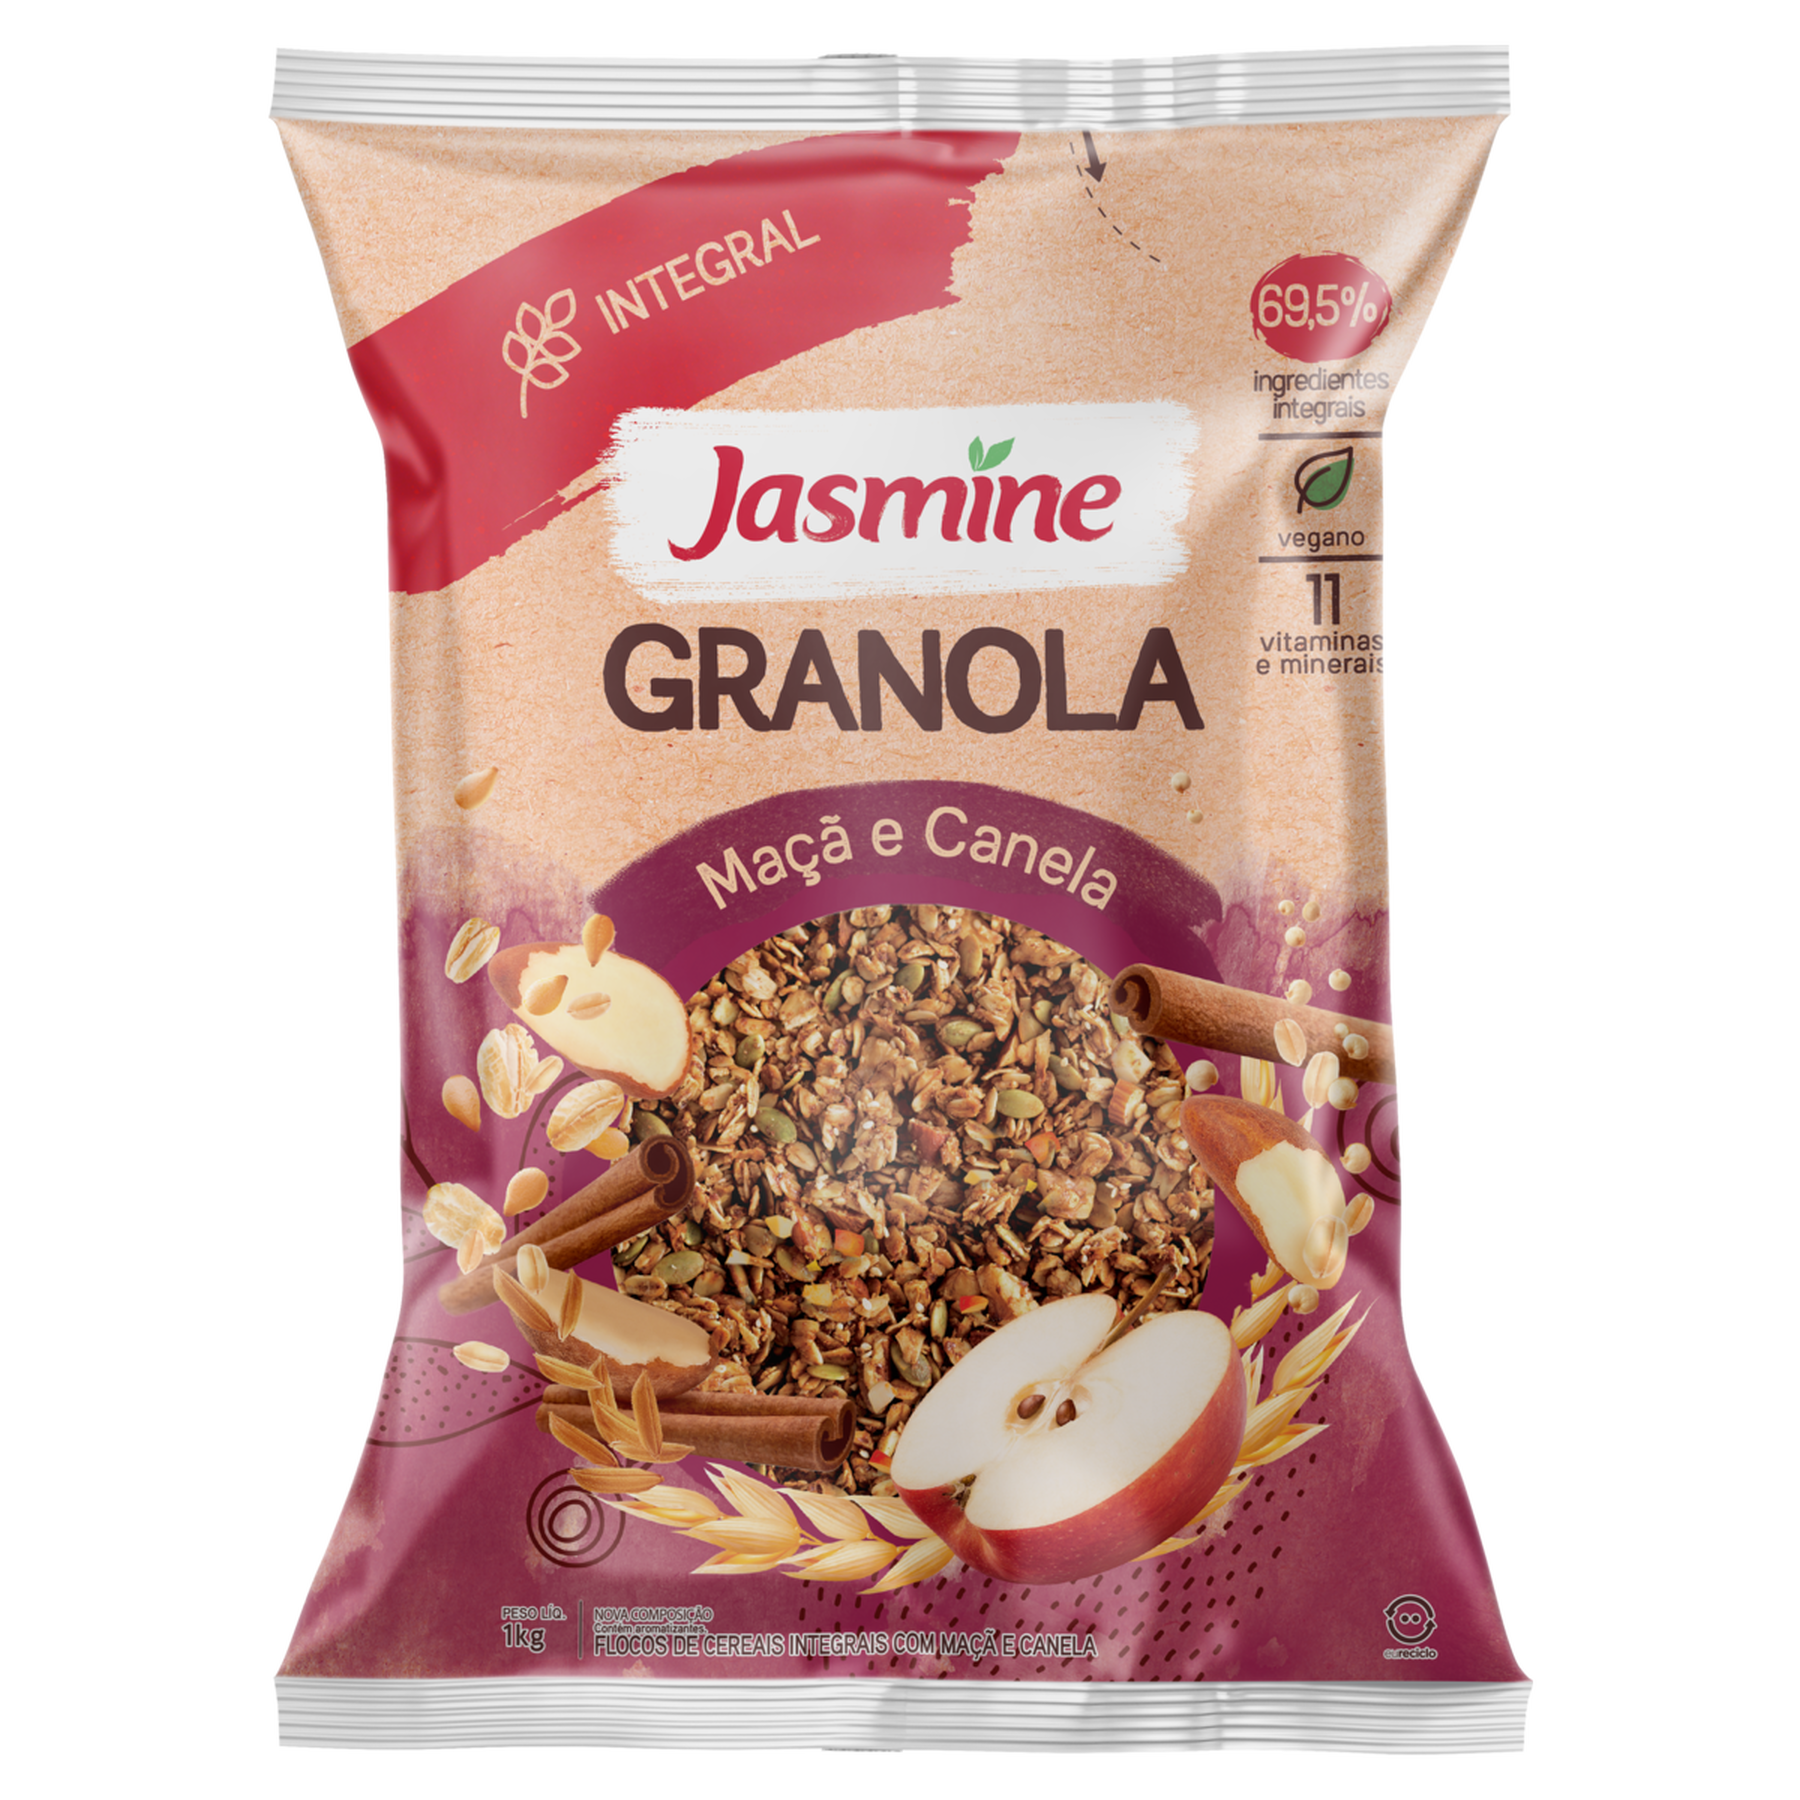 Granola Maçã e Canela Integral Jasmine Pacote 1kg